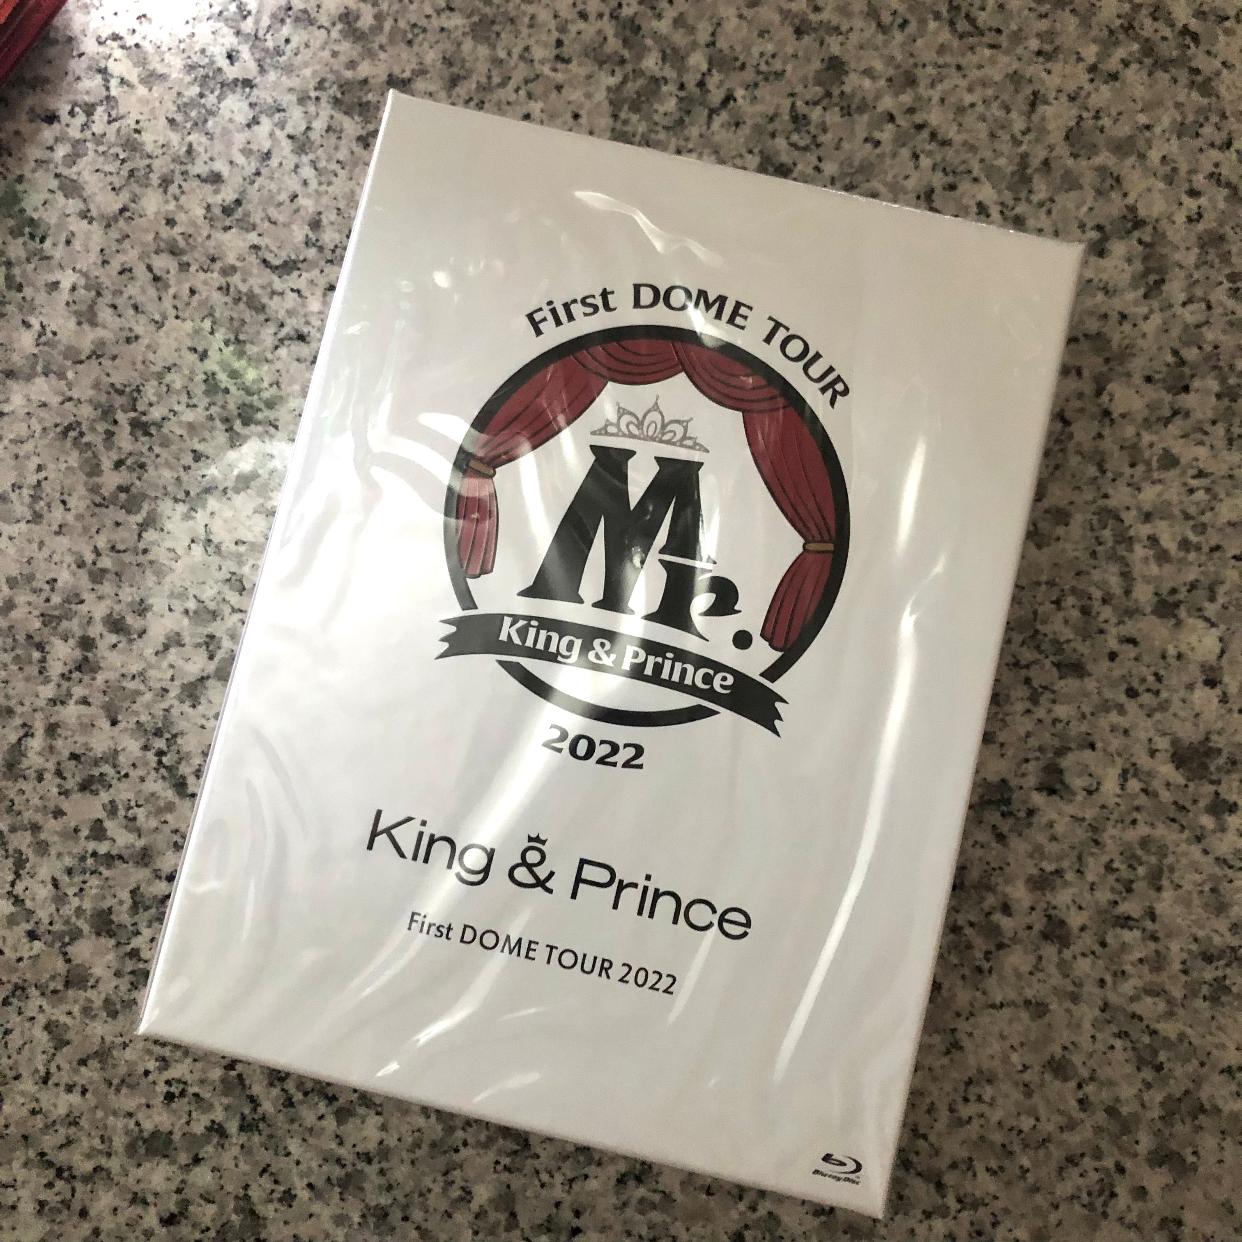 King & Prince Dome Tour Blu-ray